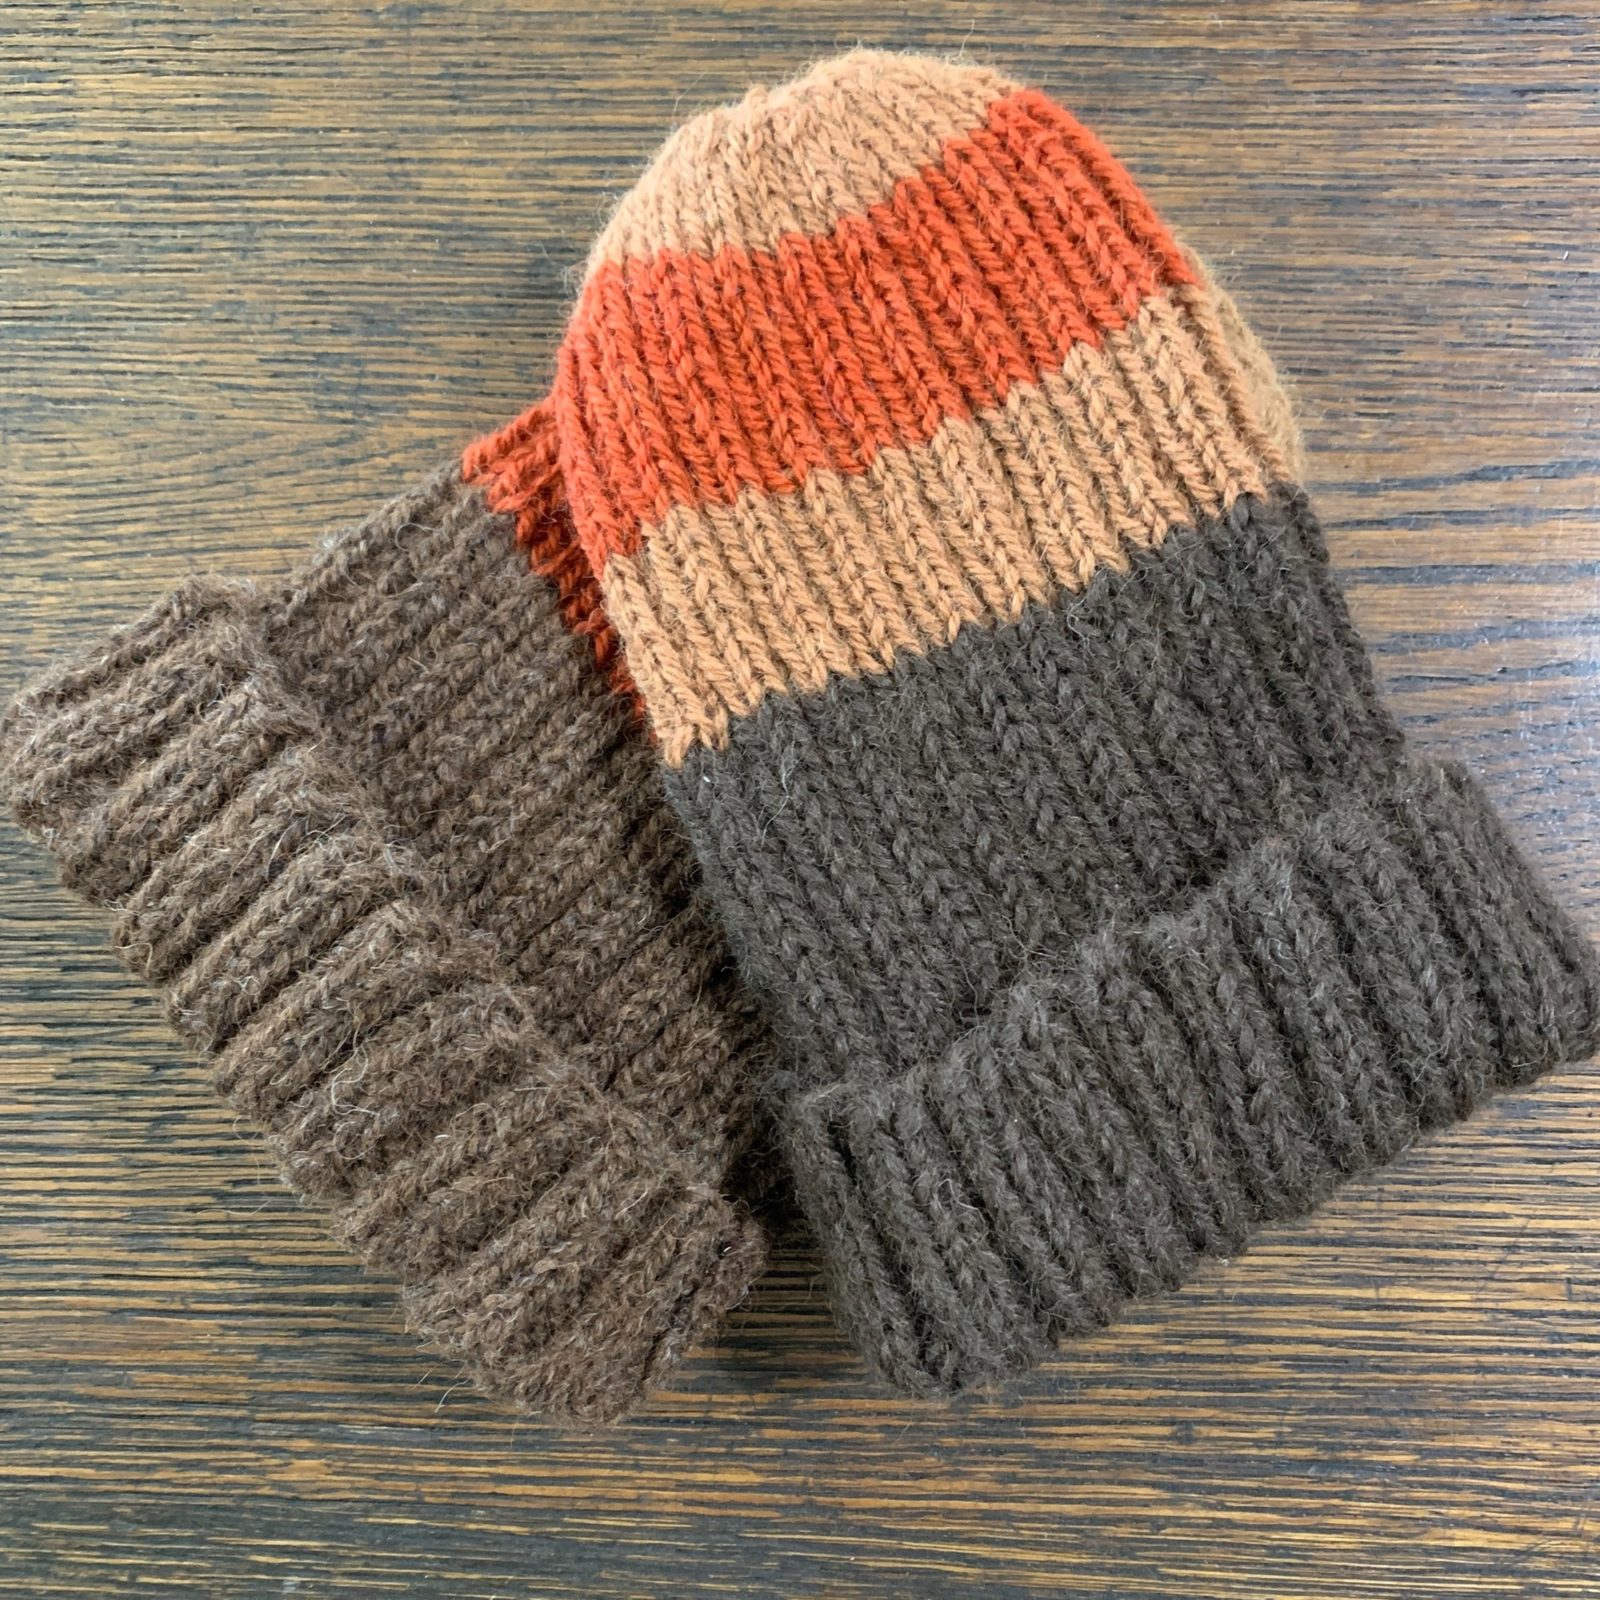 Hand Knit Brown and Orange Alpaca Hat